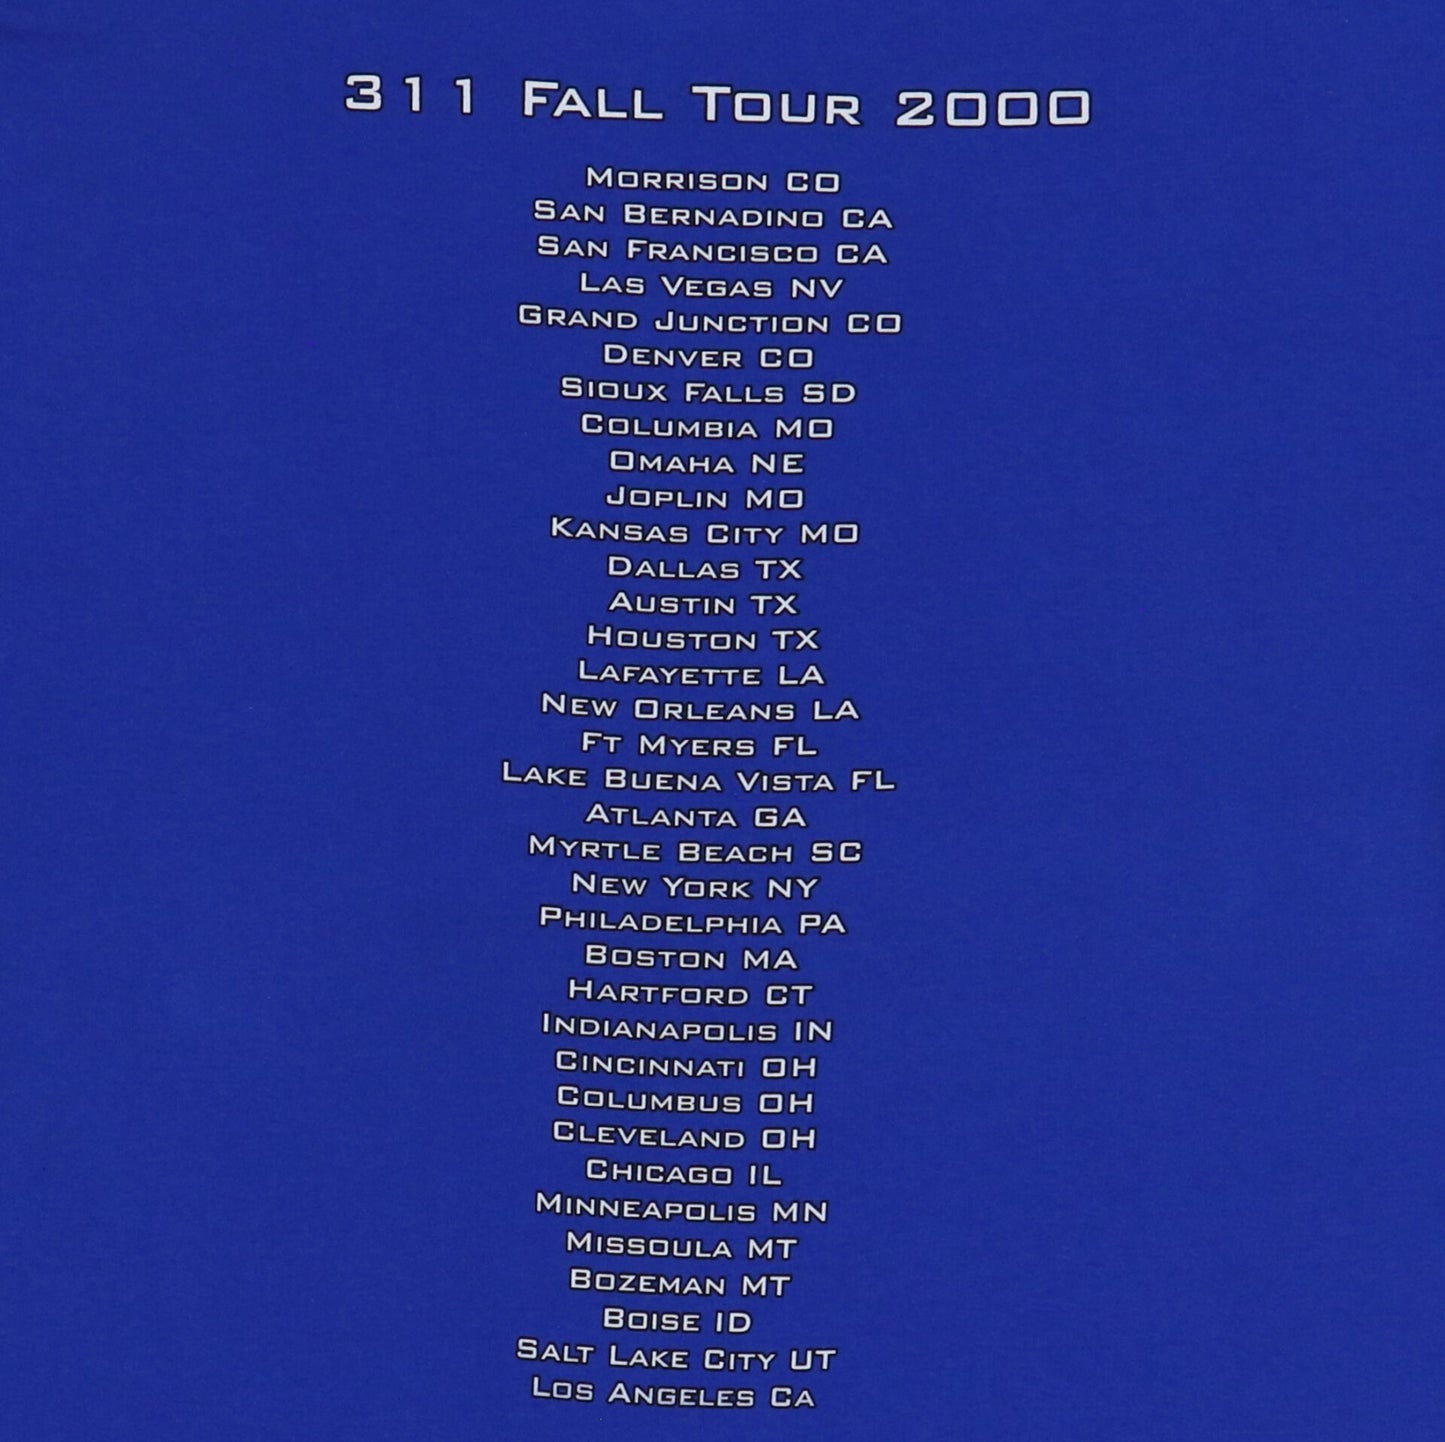 2000 311 Fall Tour shirt